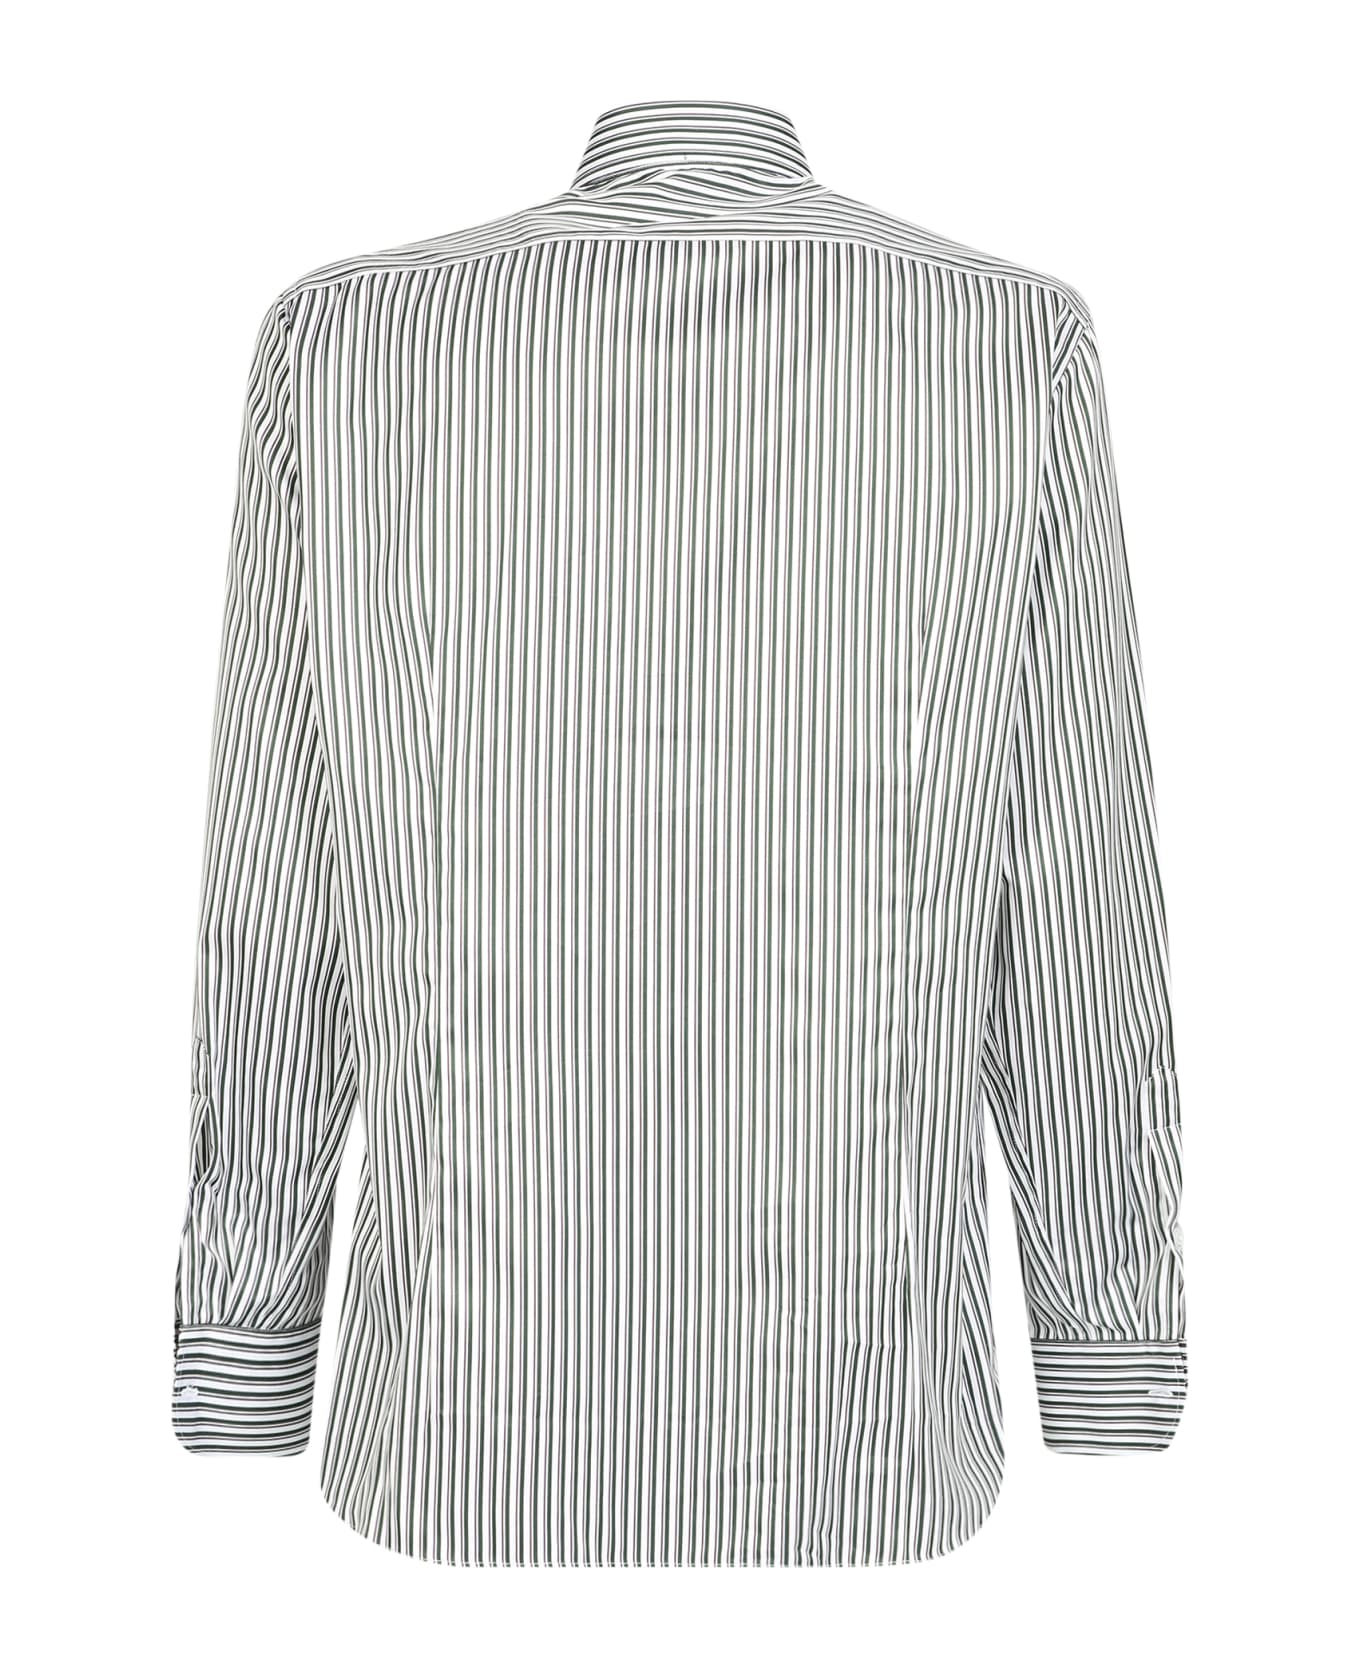 Lardini Striped Print Shirt Green And White - White シャツ